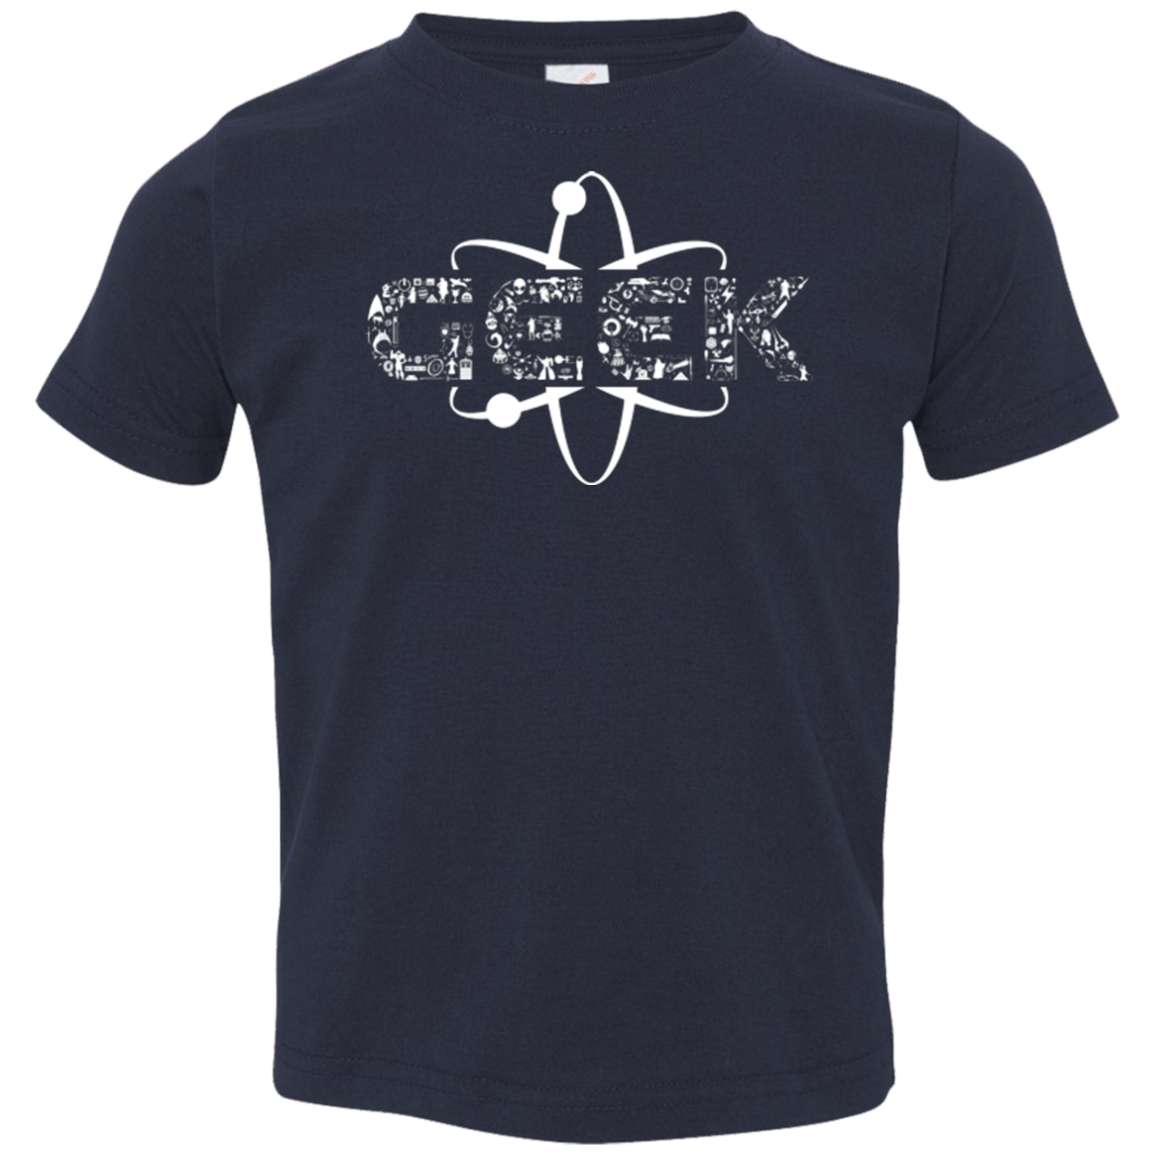 T-Shirts Navy / 2T I Geek Toddler Premium T-Shirt